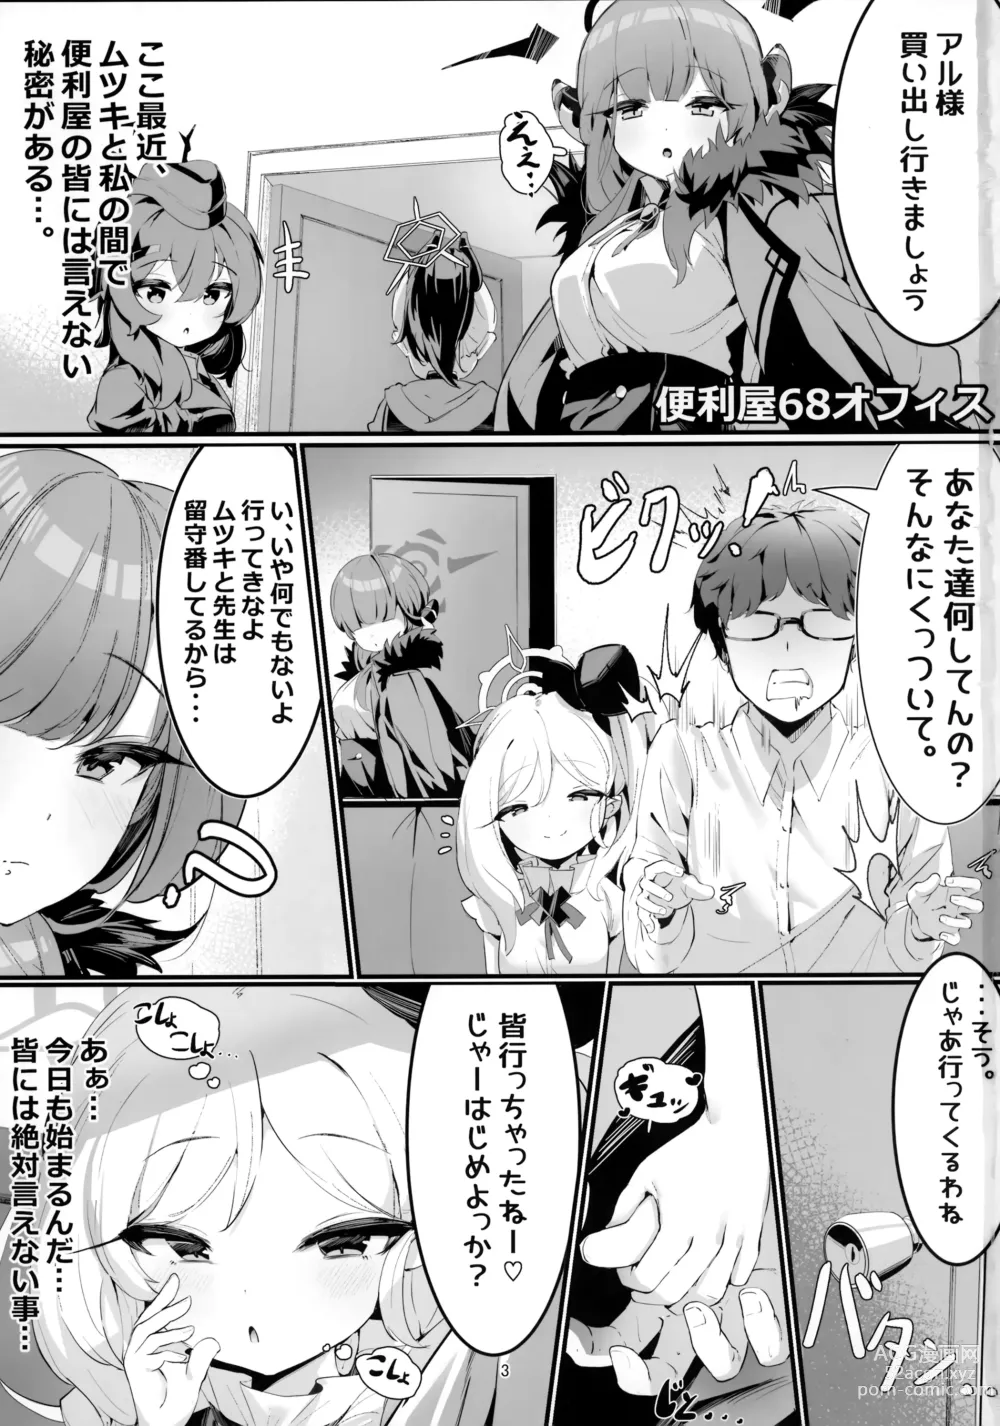 Page 2 of doujinshi Mutsuki to Futari de.